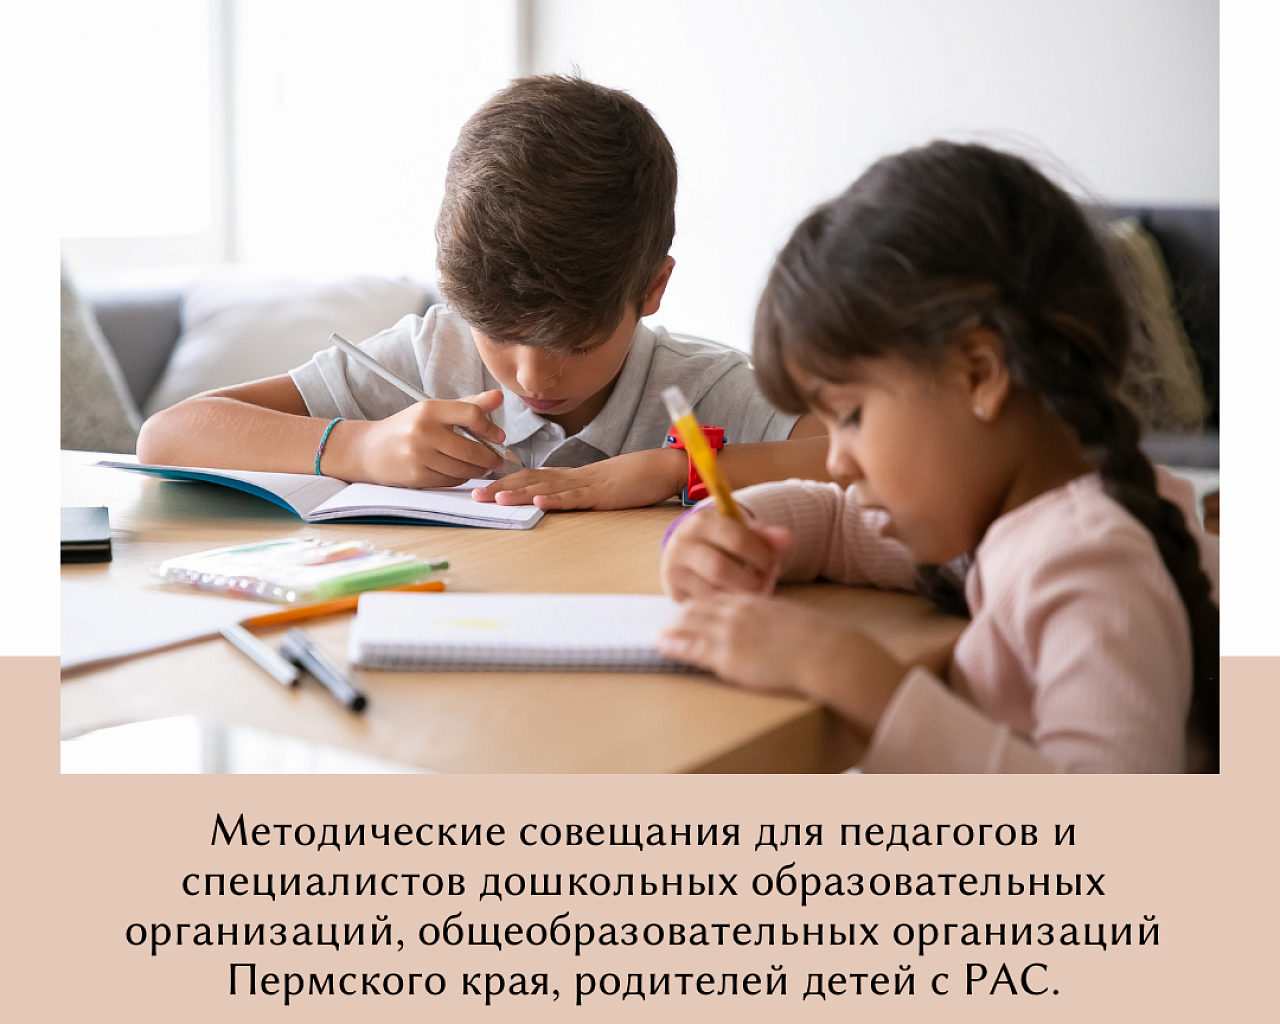 Методическое совещание для специалистов дошкольных образовательных организаций 